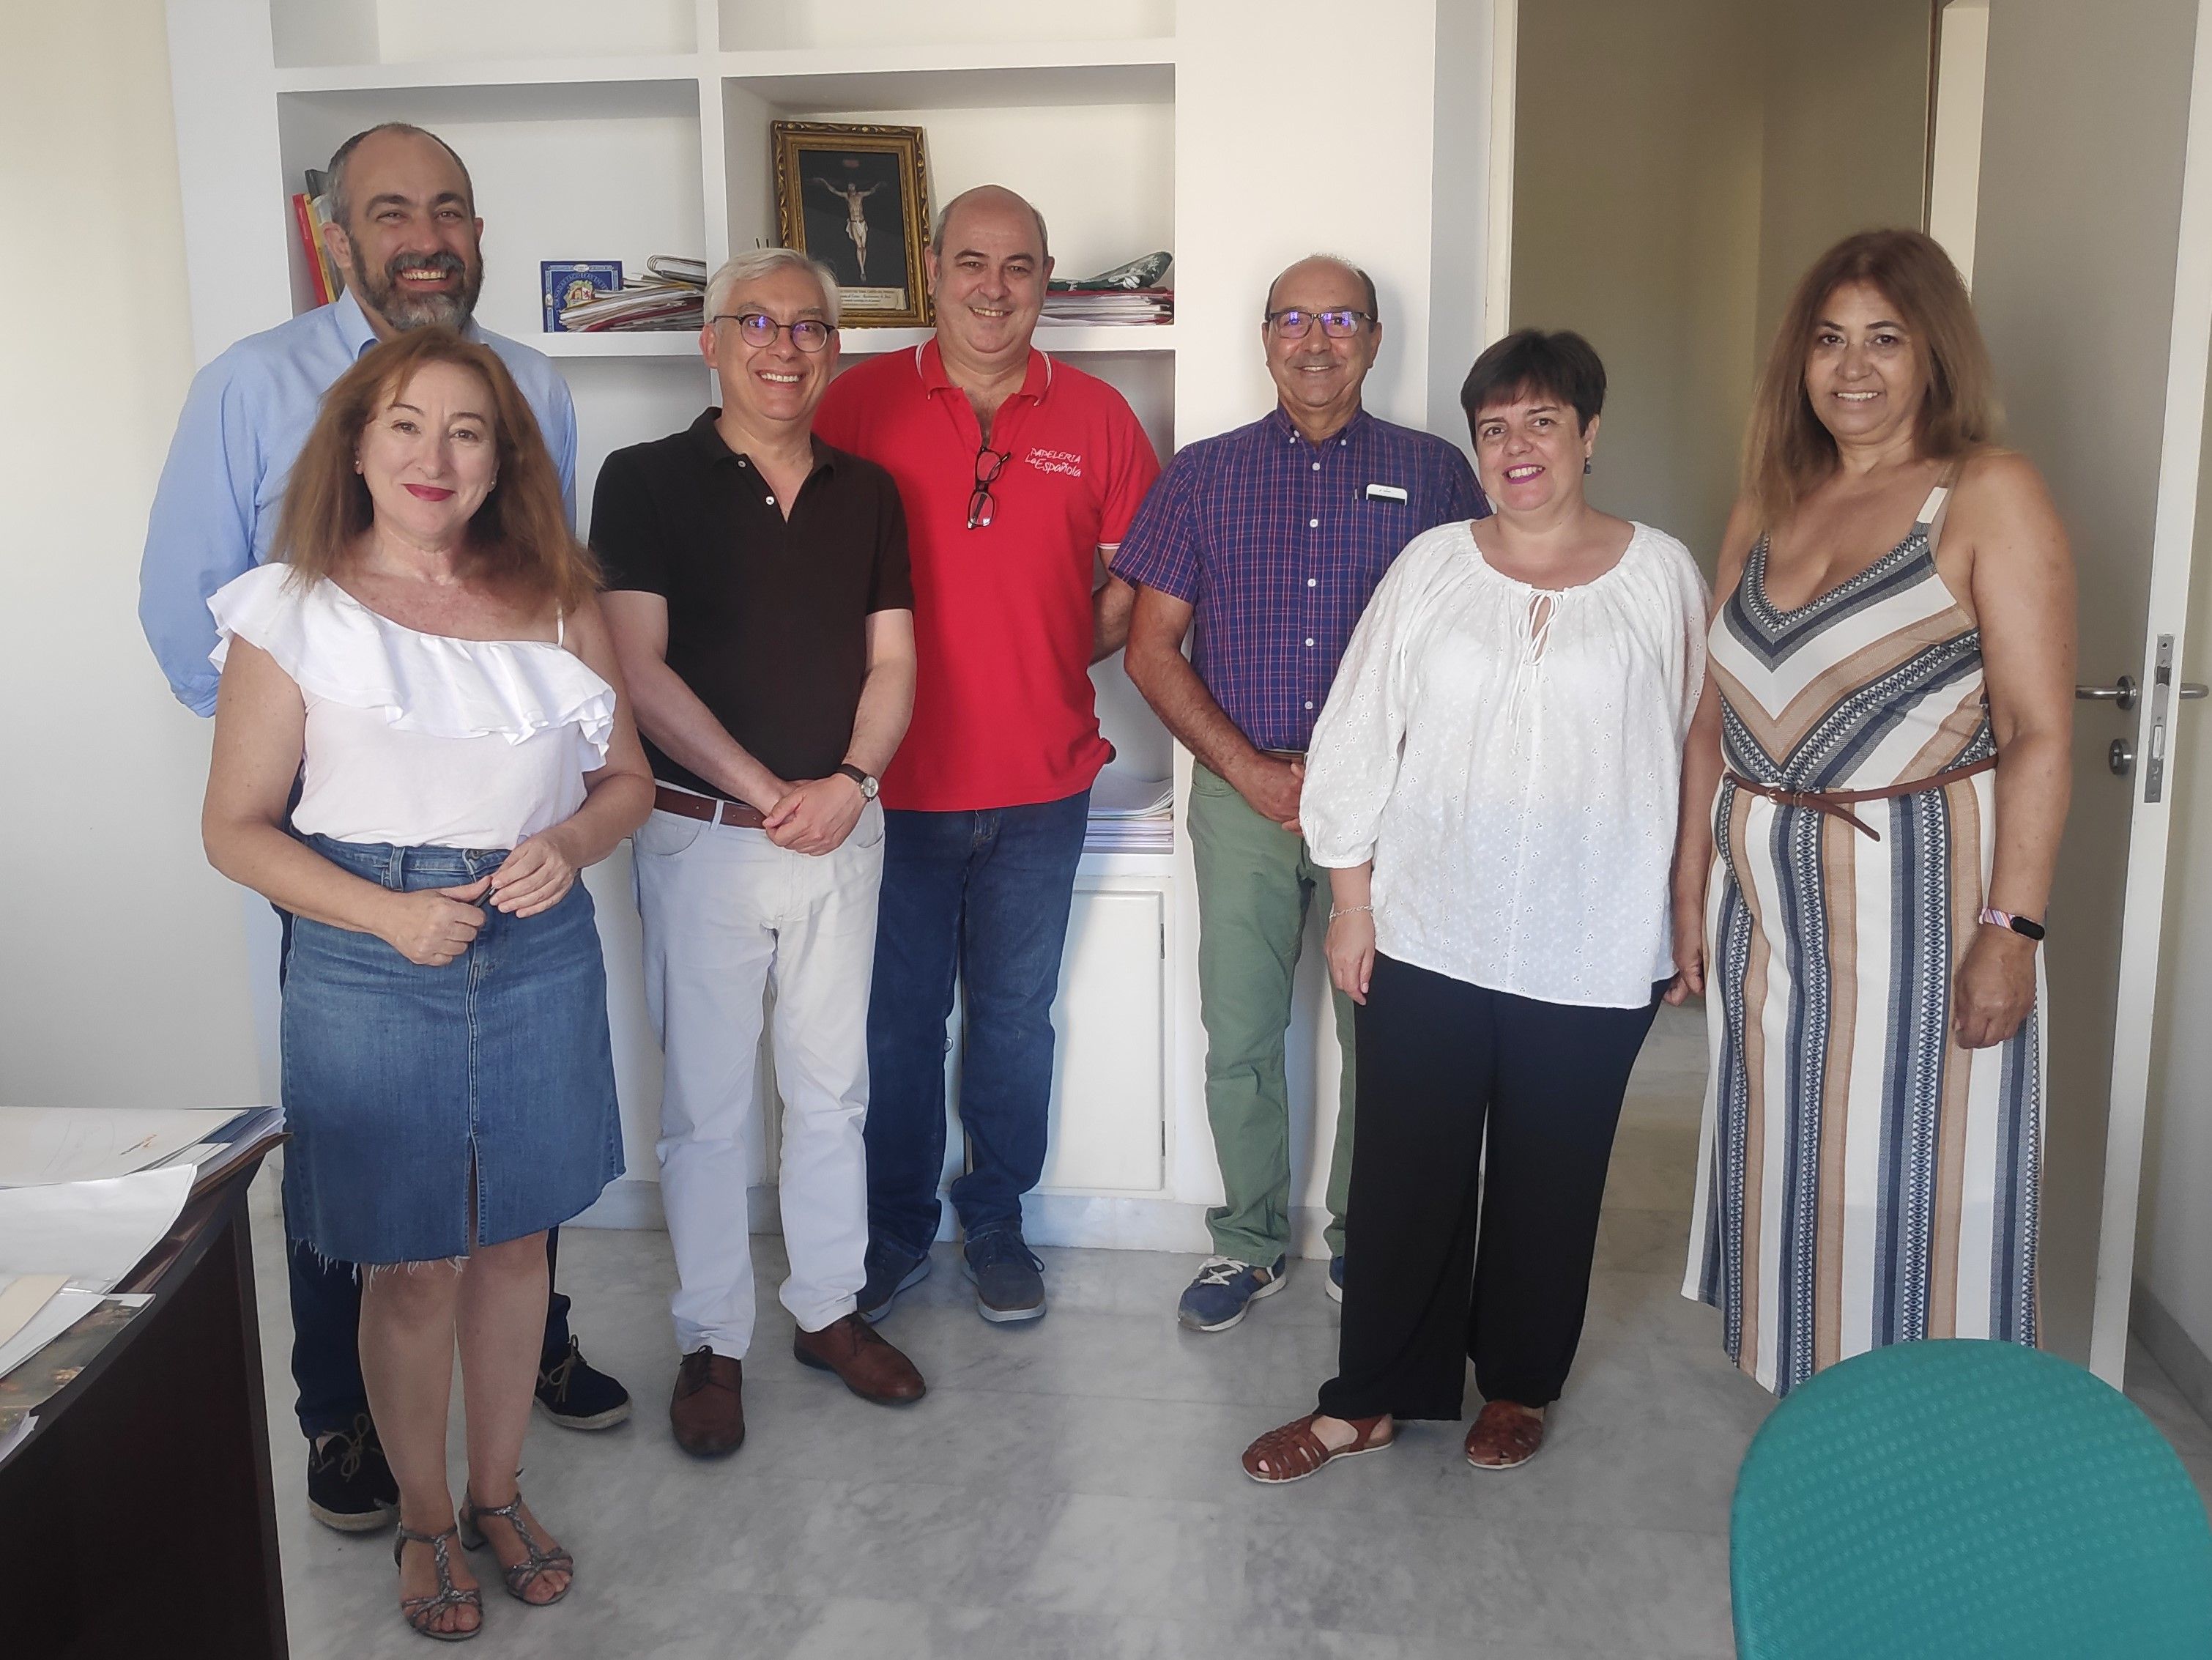 Flampa Jerez y la Asociación La Librería de tu Barrio han alcanzado un acuerdo para ofrecer descuentos en material escolar a los miembros de las AMPA locales.